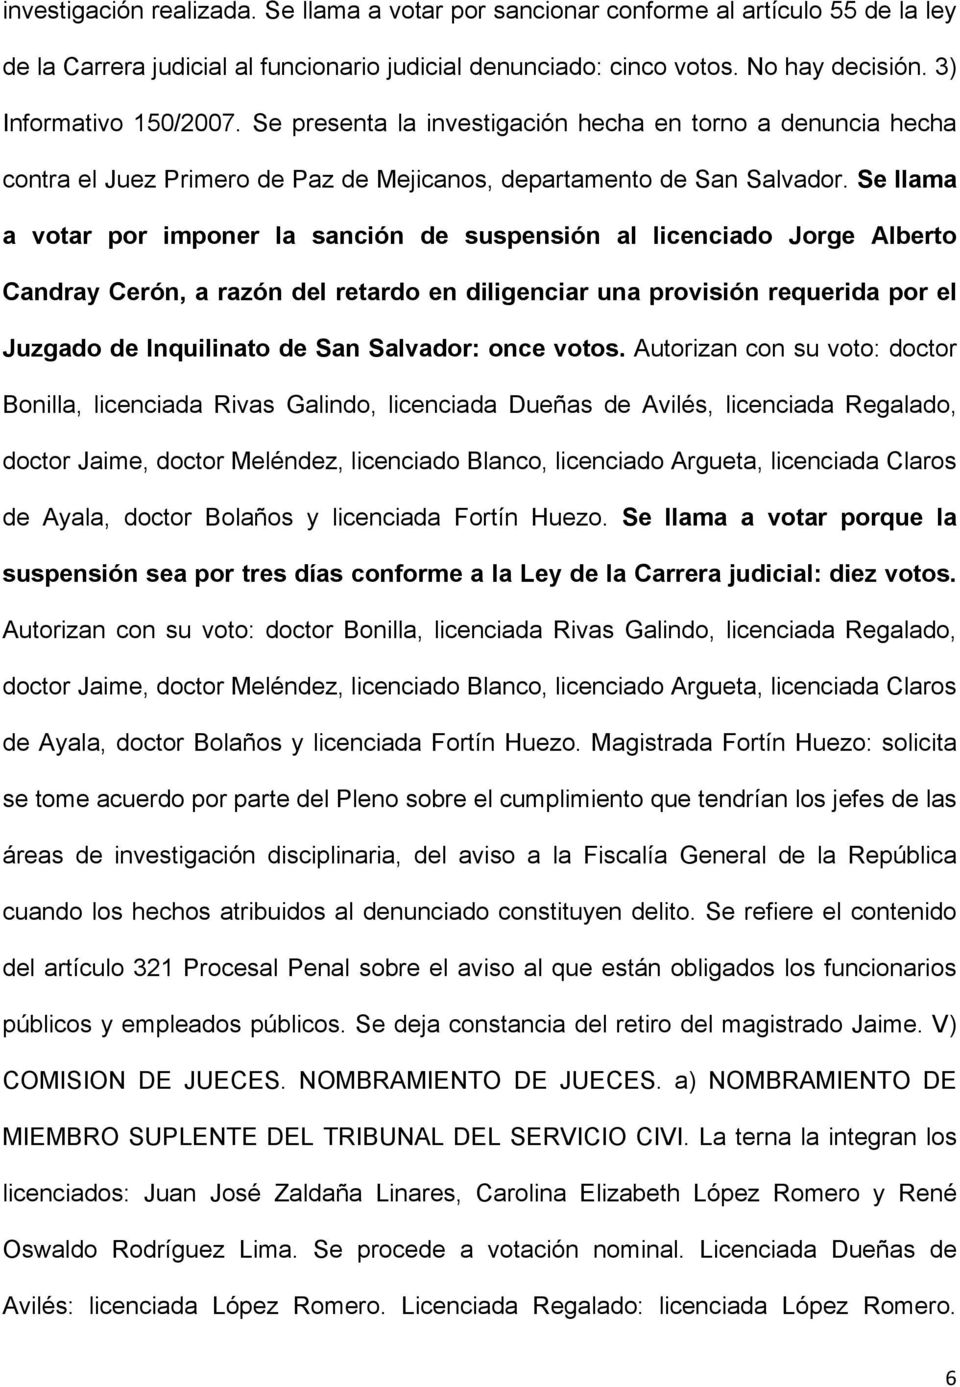 Se llama a votar por imponer la sanción de suspensión al licenciado Jorge Alberto Candray Cerón, a razón del retardo en diligenciar una provisión requerida por el Juzgado de Inquilinato de San